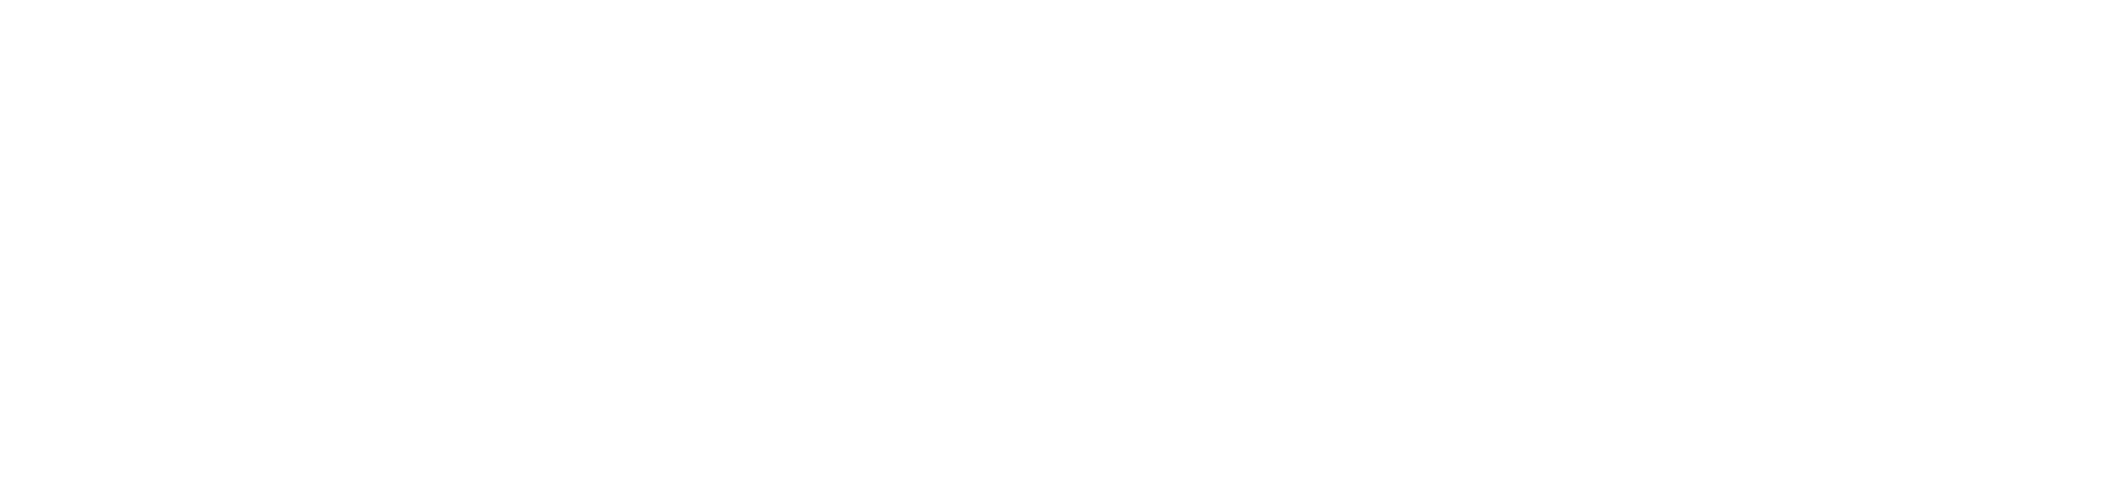 scott harris logo